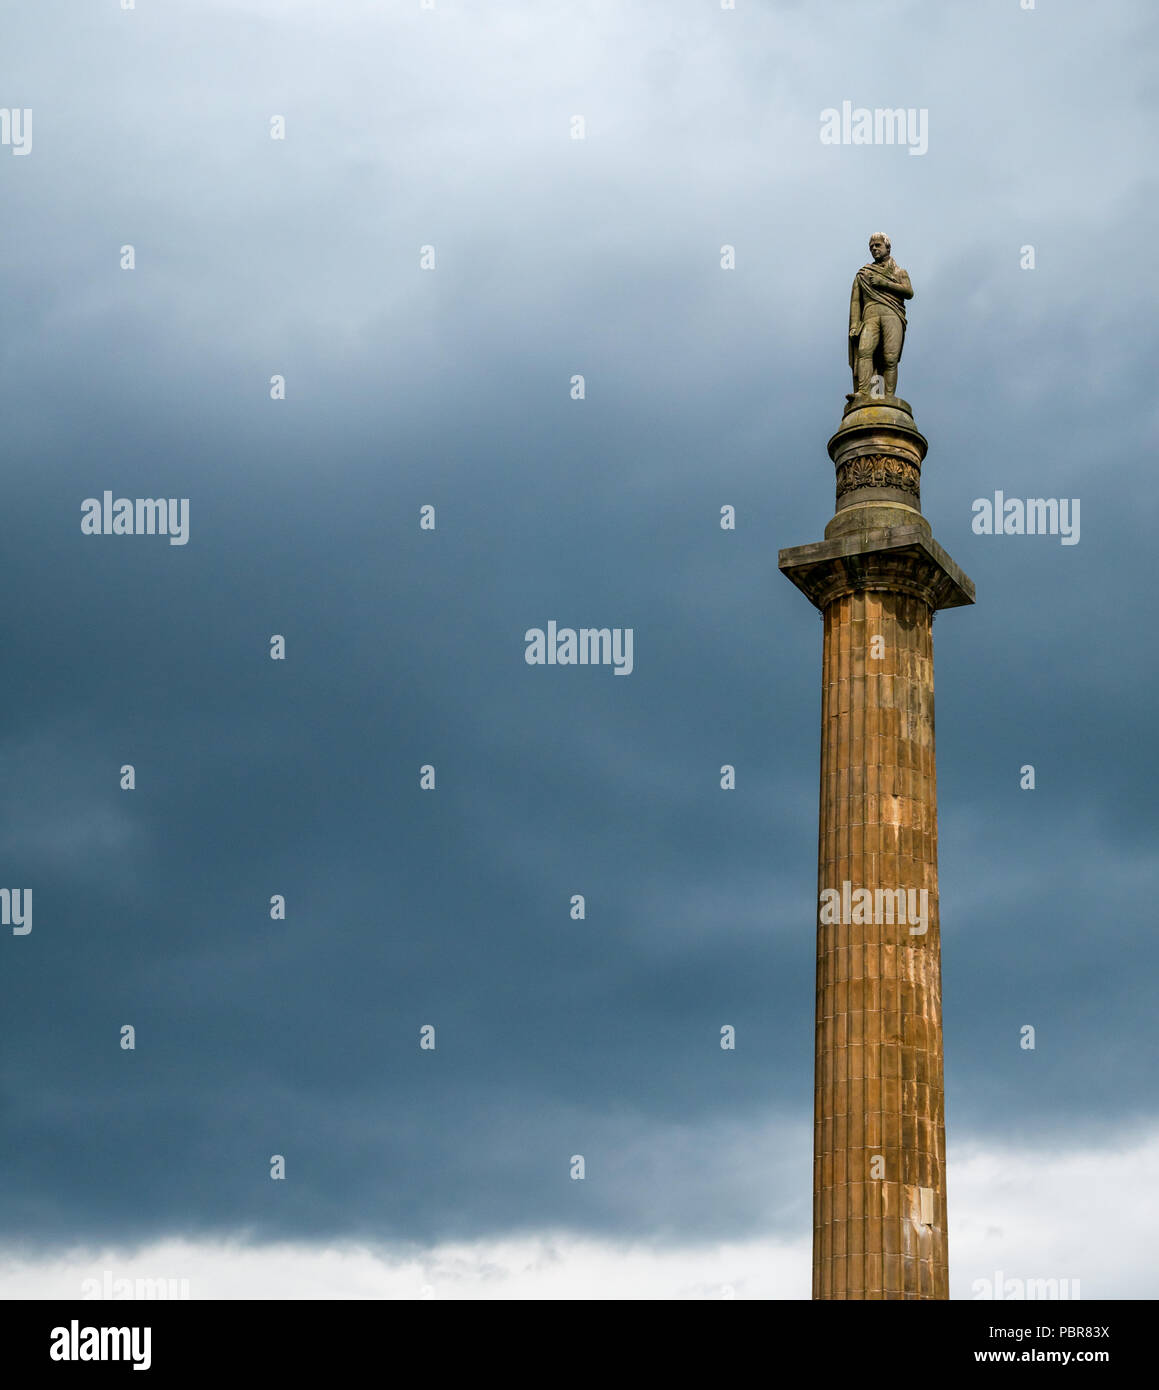 Sir Walter Scott Memorial Spalte Statue und mit stürmischen bedrohlich dunklen Himmel, George Square, Glasgow, Schottland, Großbritannien Stockfoto